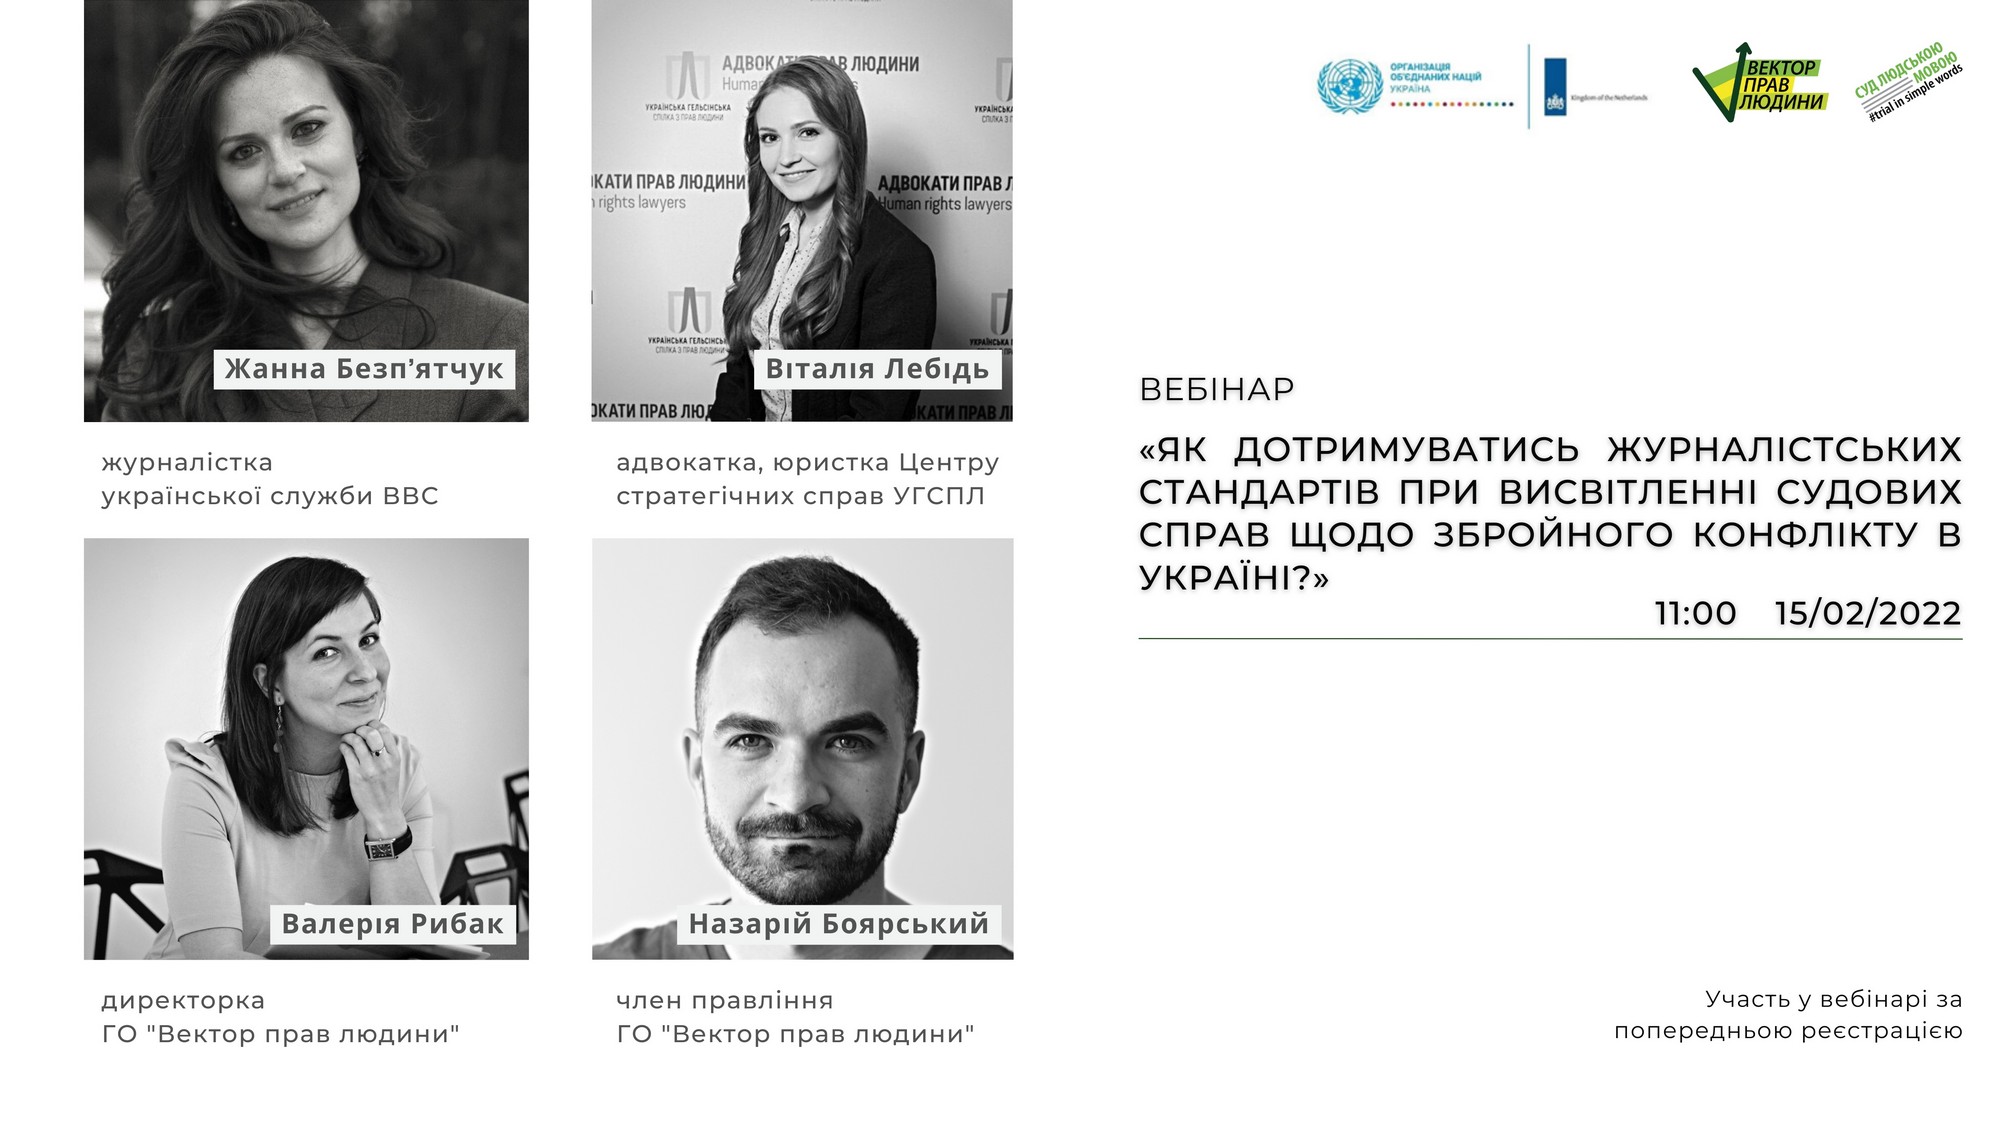 Запрошуємо долучитись до вебінару «Як дотримуватись журналістських стандартів при висвітленні судових справ щодо збройного конфлікту в Україні?»